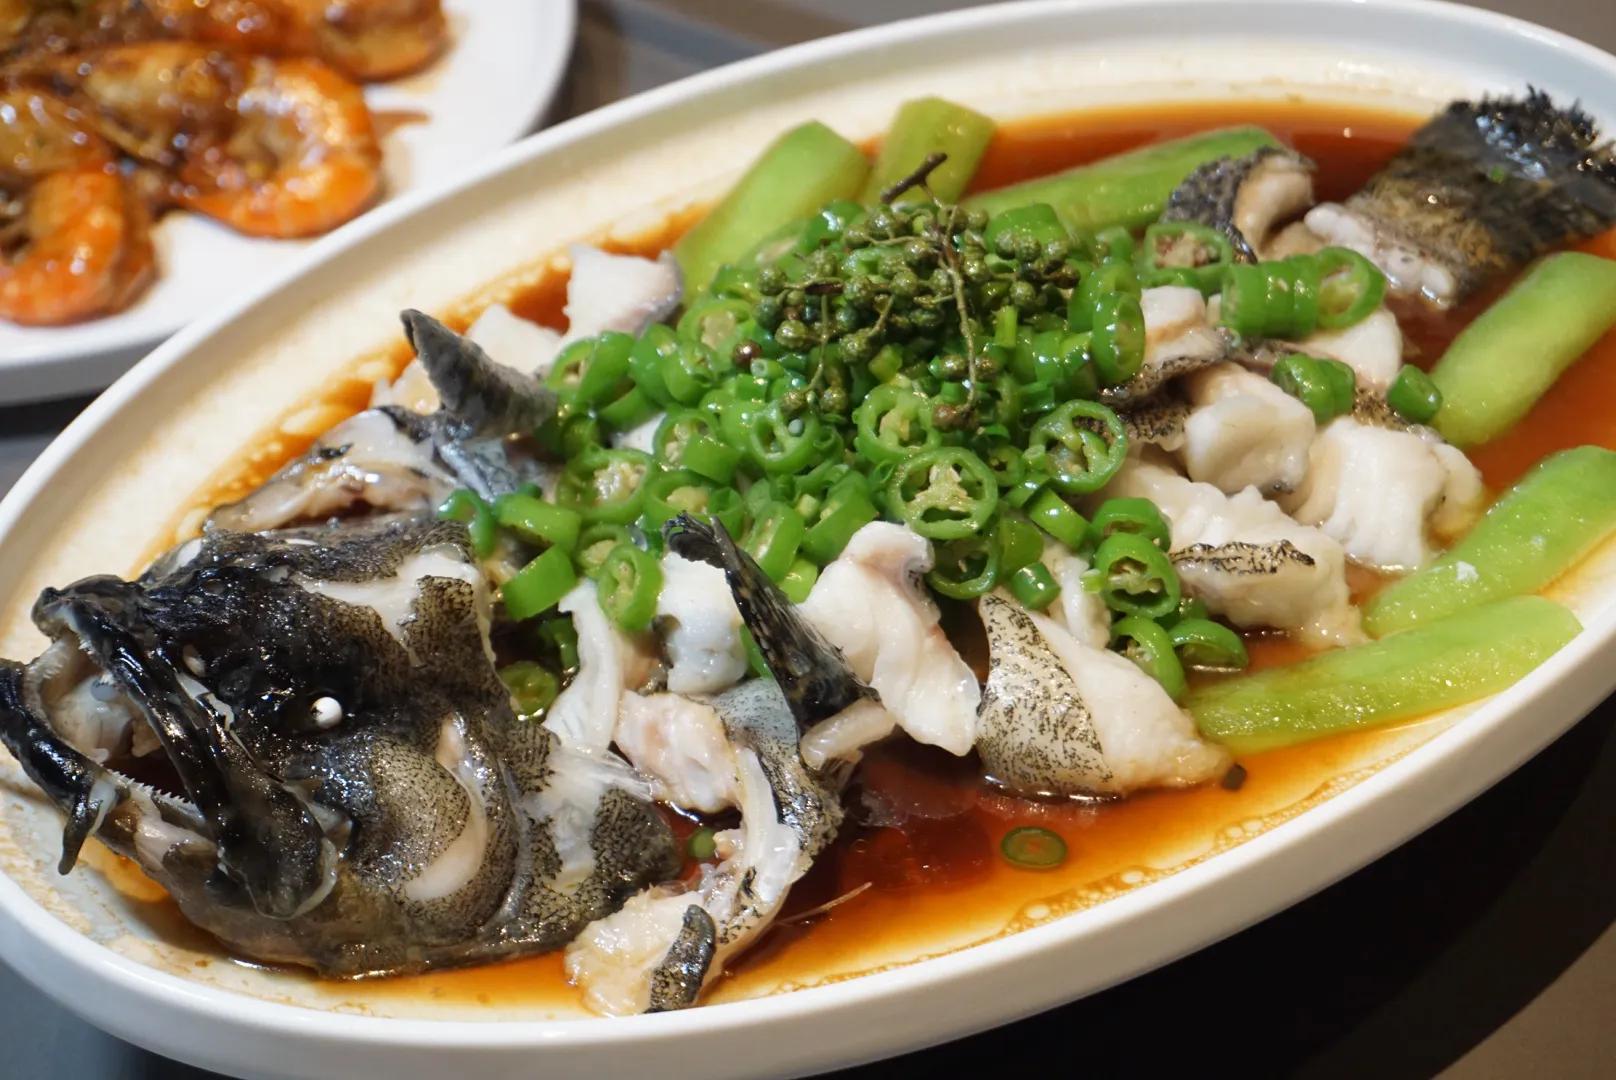 鲜花椒蒸龙胆鱼 龙胆鱼肉质细嫩,新鲜花椒和青椒烹饪,鱼肉鲜嫩中带着